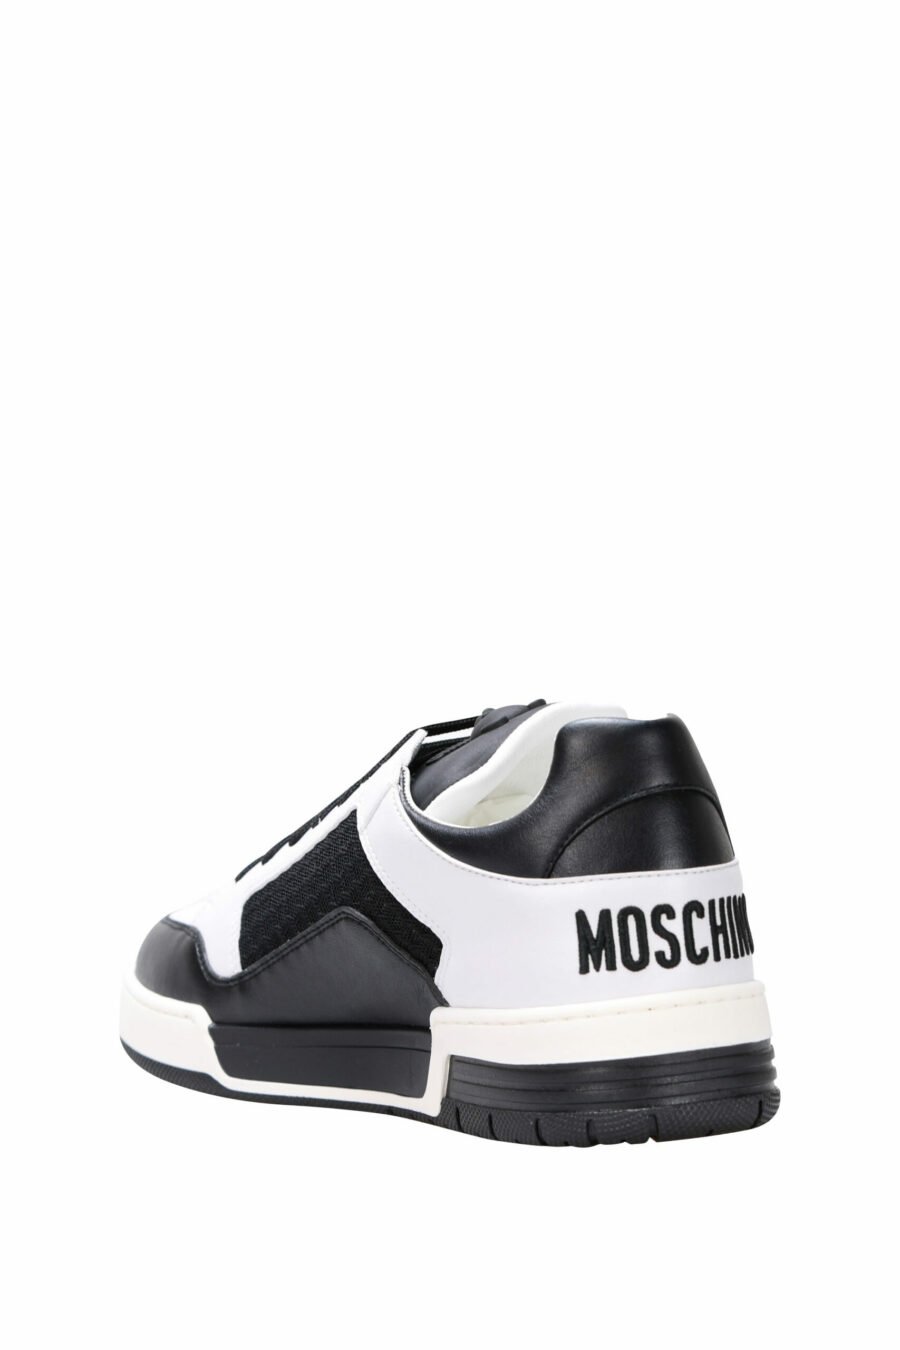 Chaussures bicolores noires et blanches "kevin40" avec mini logo - 8054388024457 3 scaled